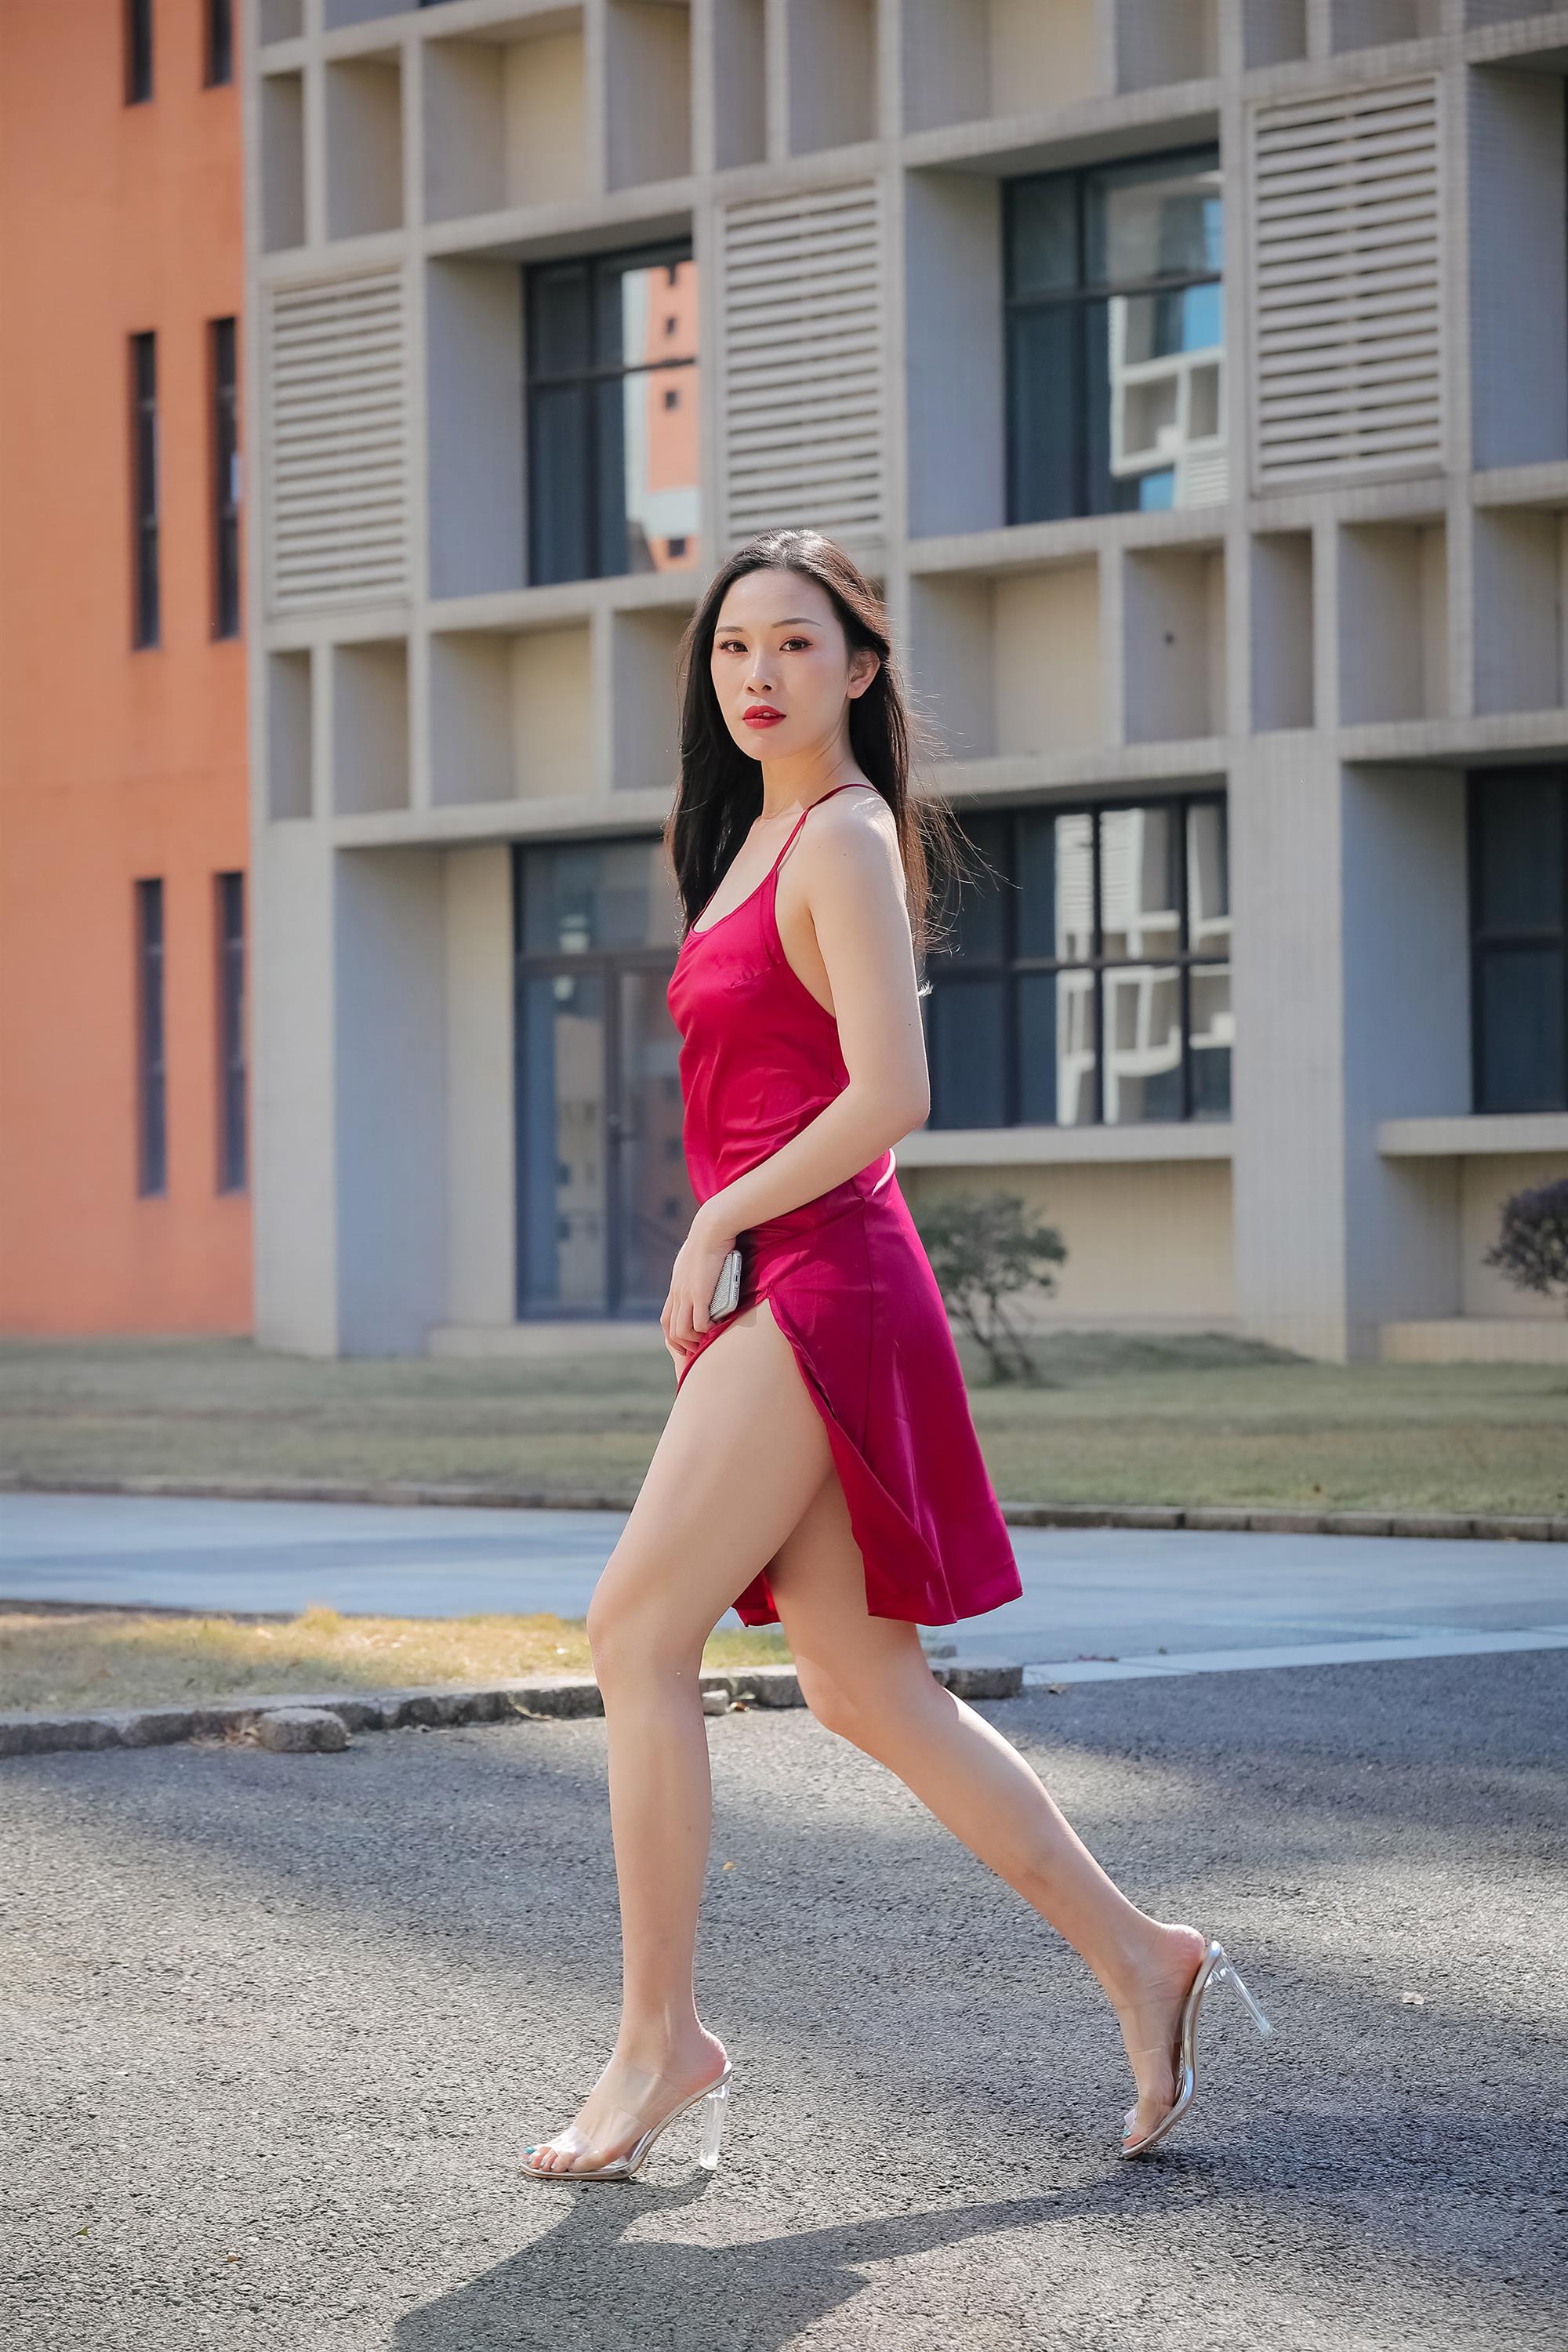 Street beauty in a red dress - 26.jpg